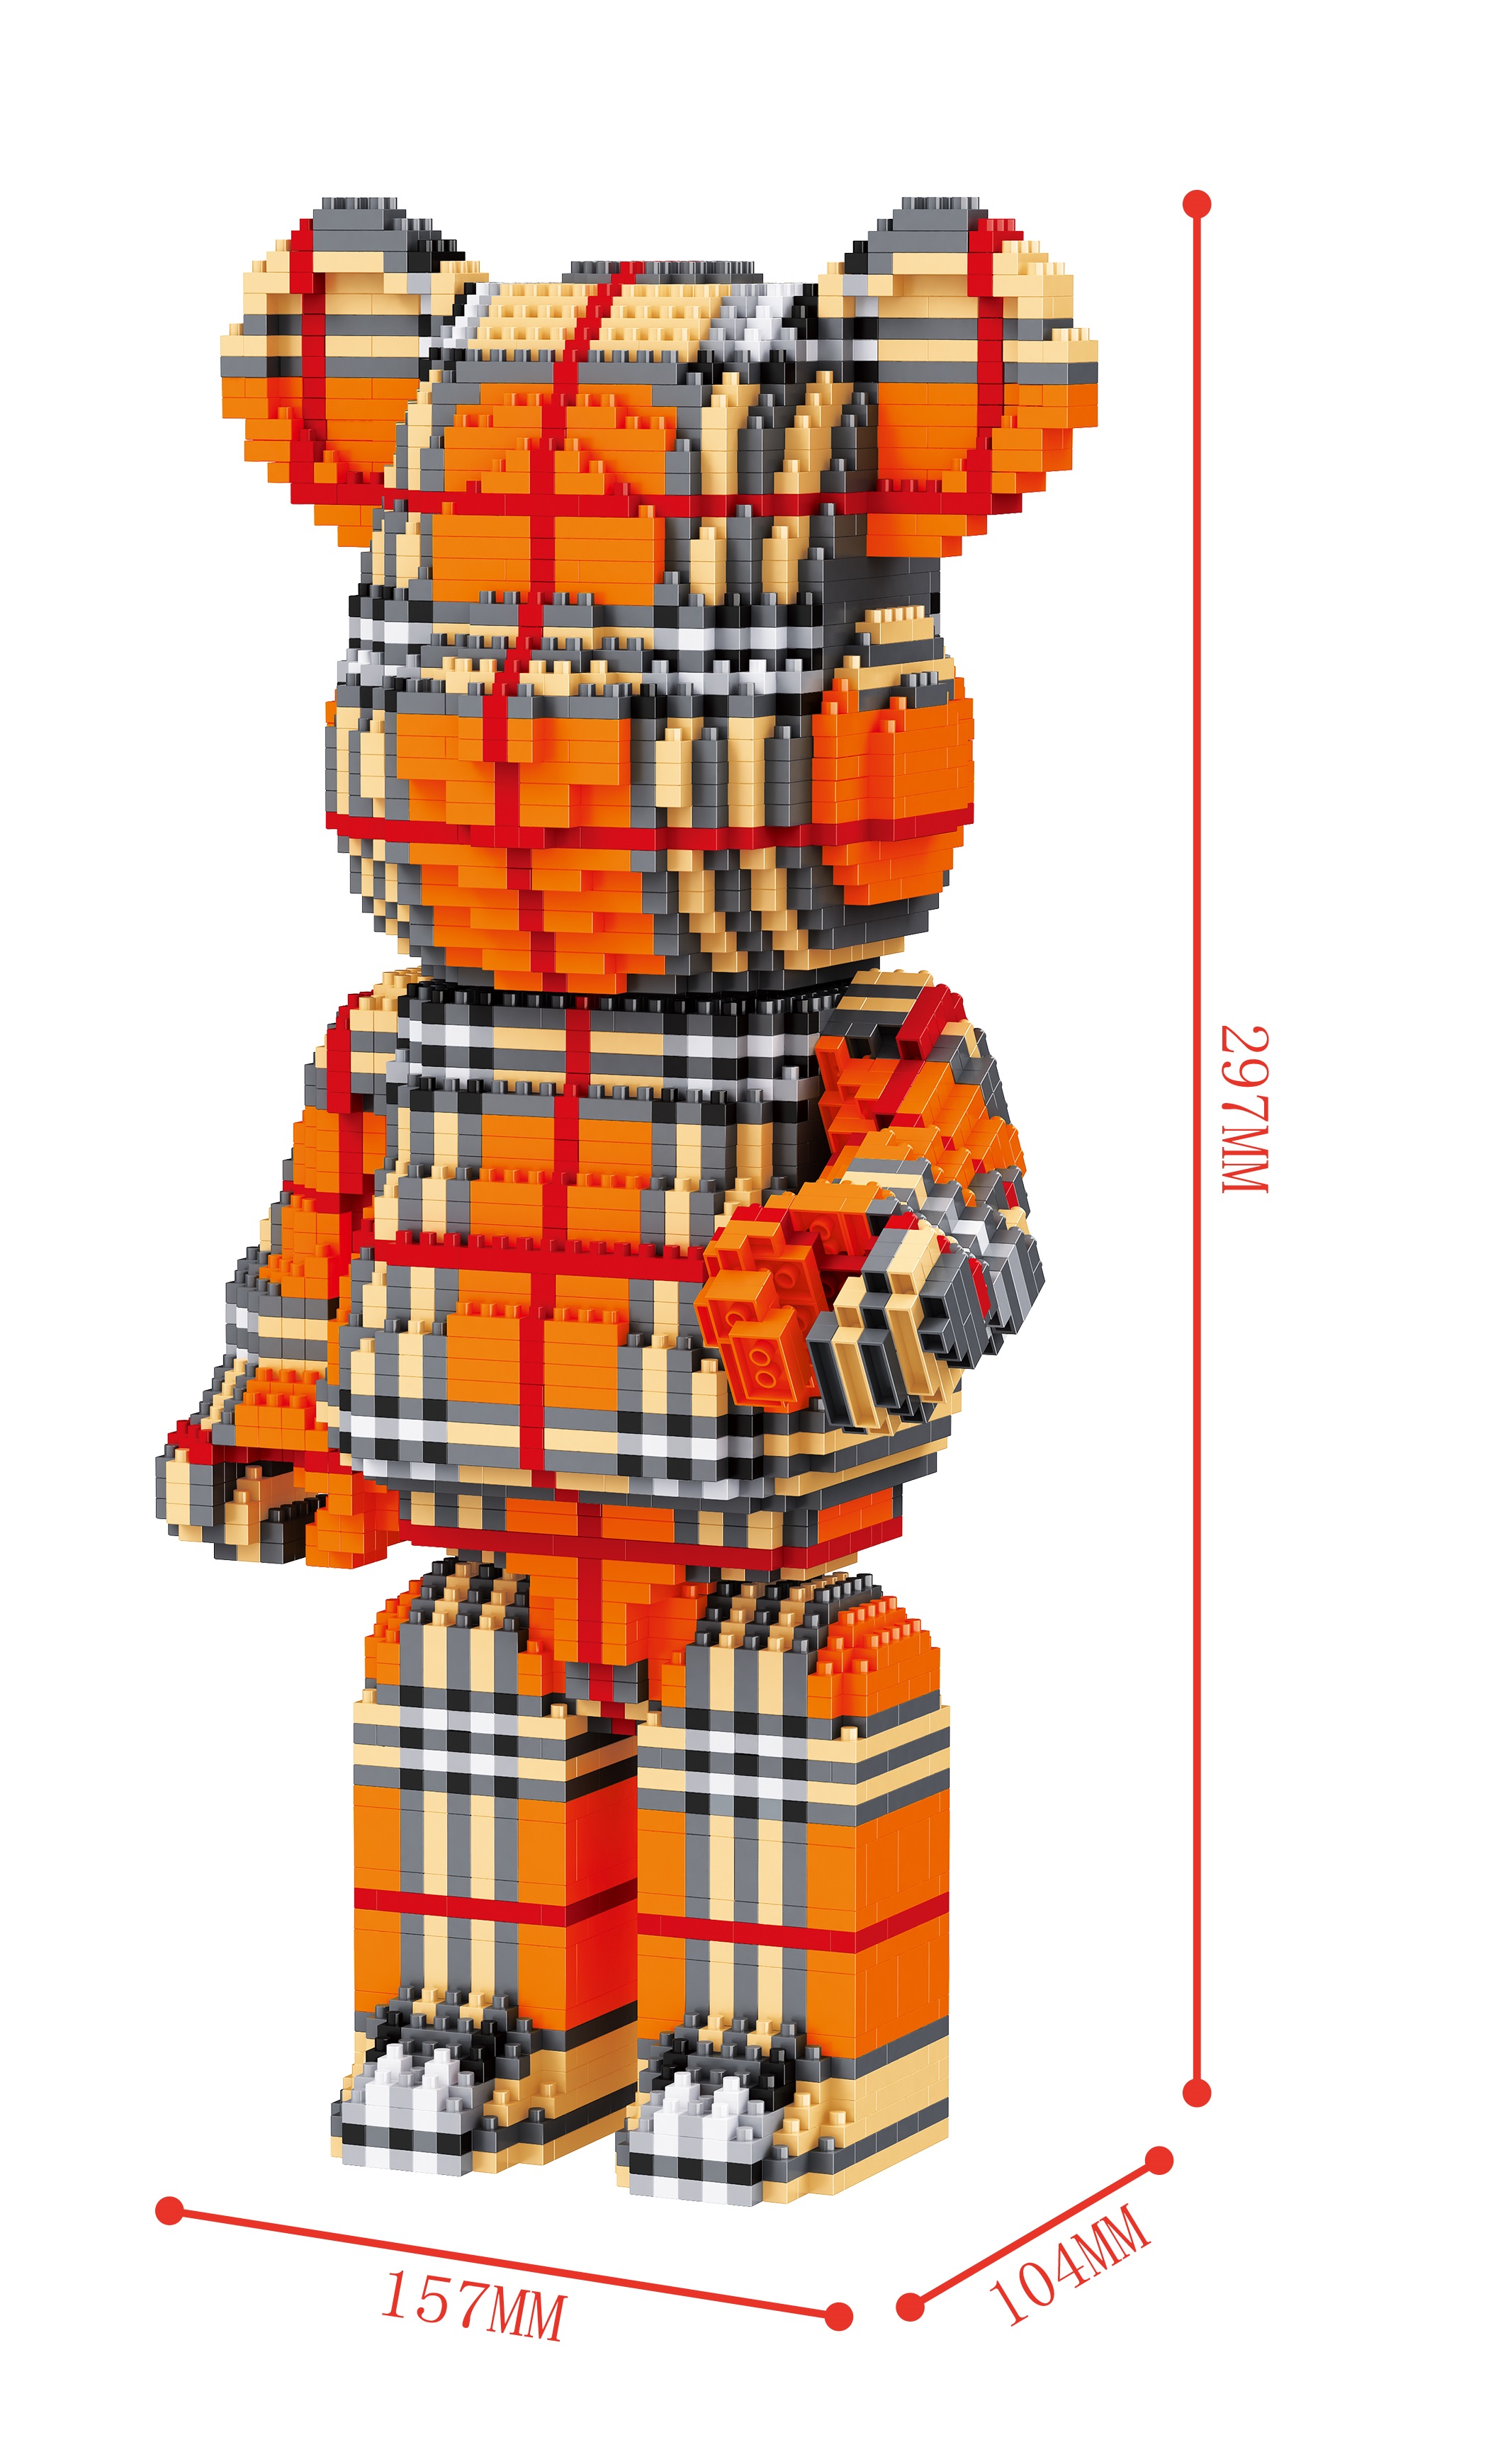 Конструктор 3D из миниблоков Balody LP BearBrick Fashion Мишка 3349 элементов - BA200585 конструктор 3d из миниблоков balody teddy bear мишка жирафик 917 элементов ba18254